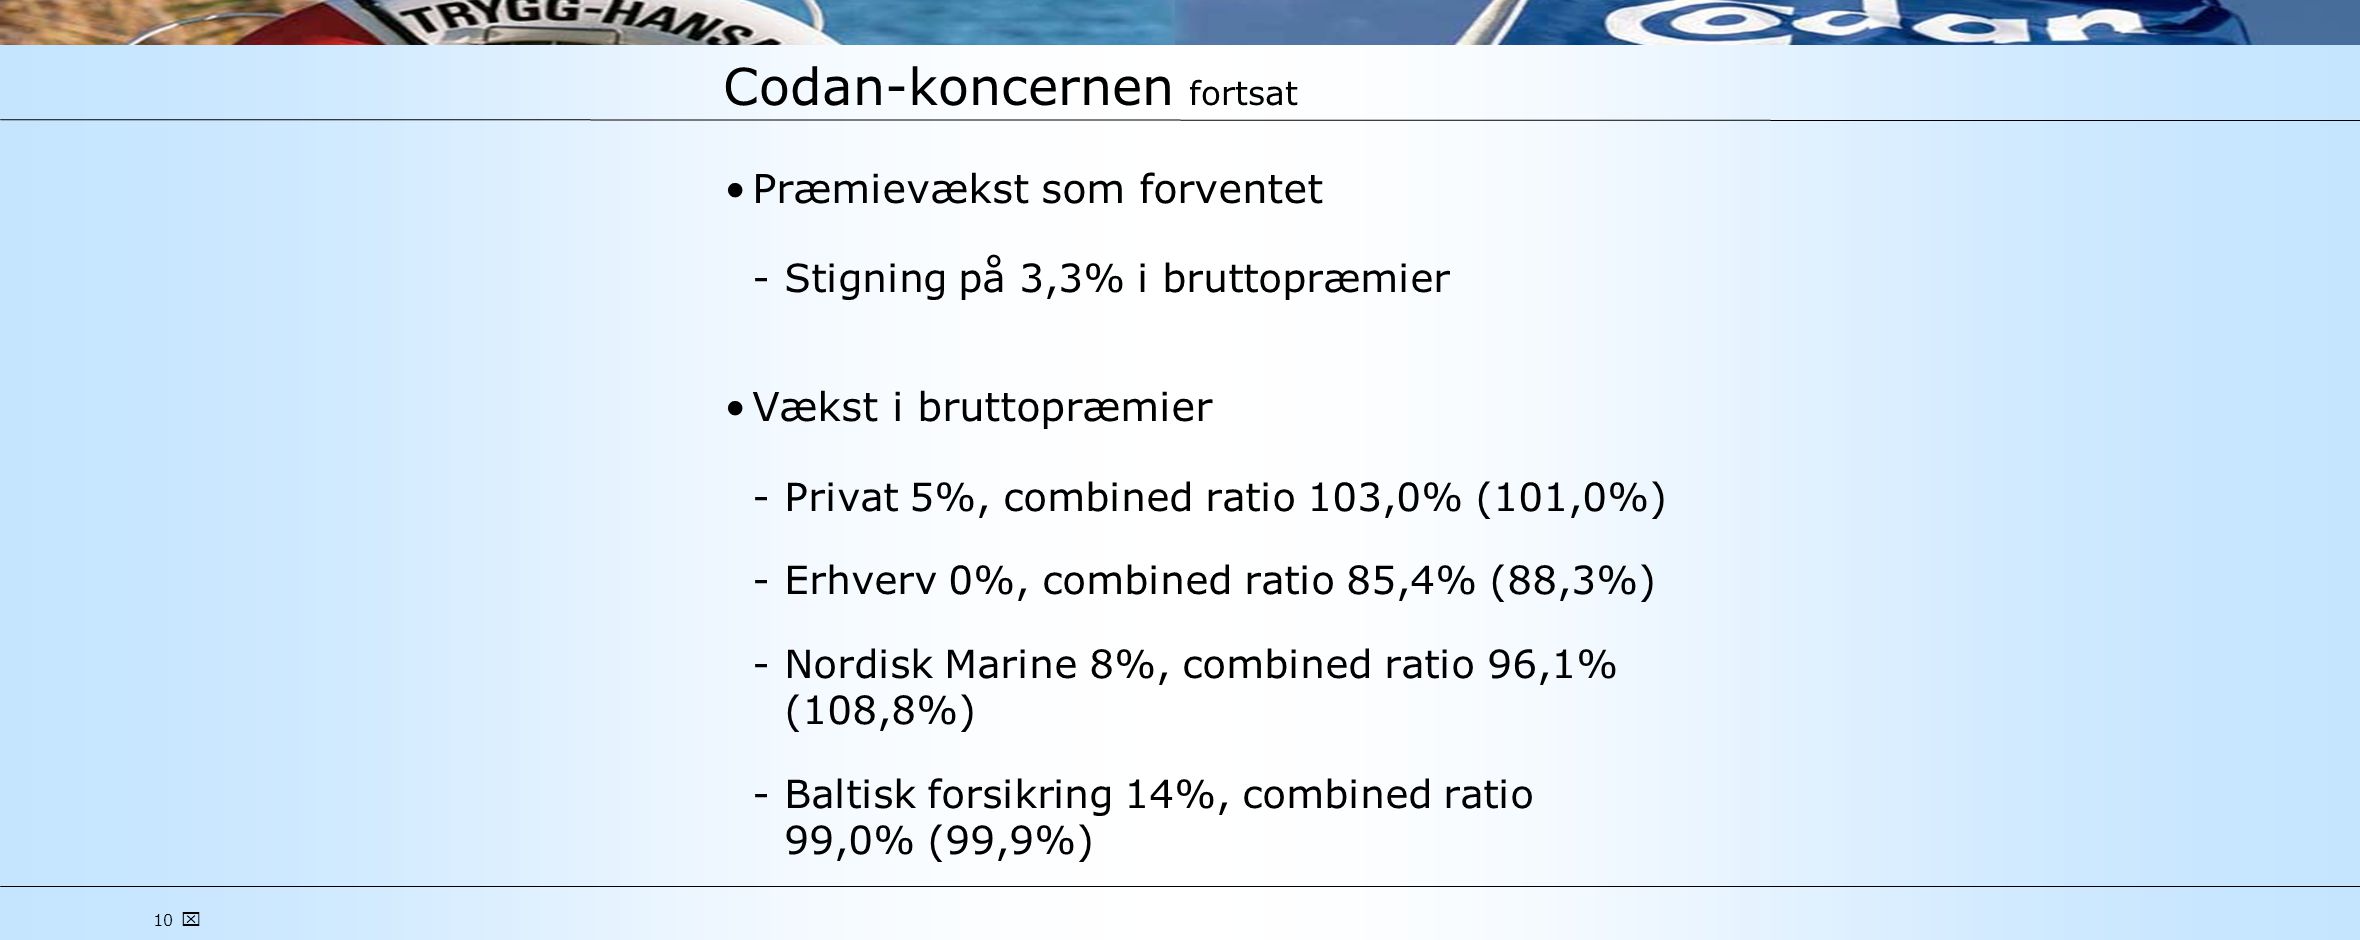 10  Codan-koncernen fortsat •Præmievækst som forventet ­Stigning på 3,3% i bruttopræmier •Vækst i bruttopræmier ­Privat 5%, combined ratio 103,0% (101,0%) ­Erhverv 0%, combined ratio 85,4% (88,3%) ­Nordisk Marine 8%, combined ratio 96,1% (108,8%) ­Baltisk forsikring 14%, combined ratio 99,0% (99,9%)